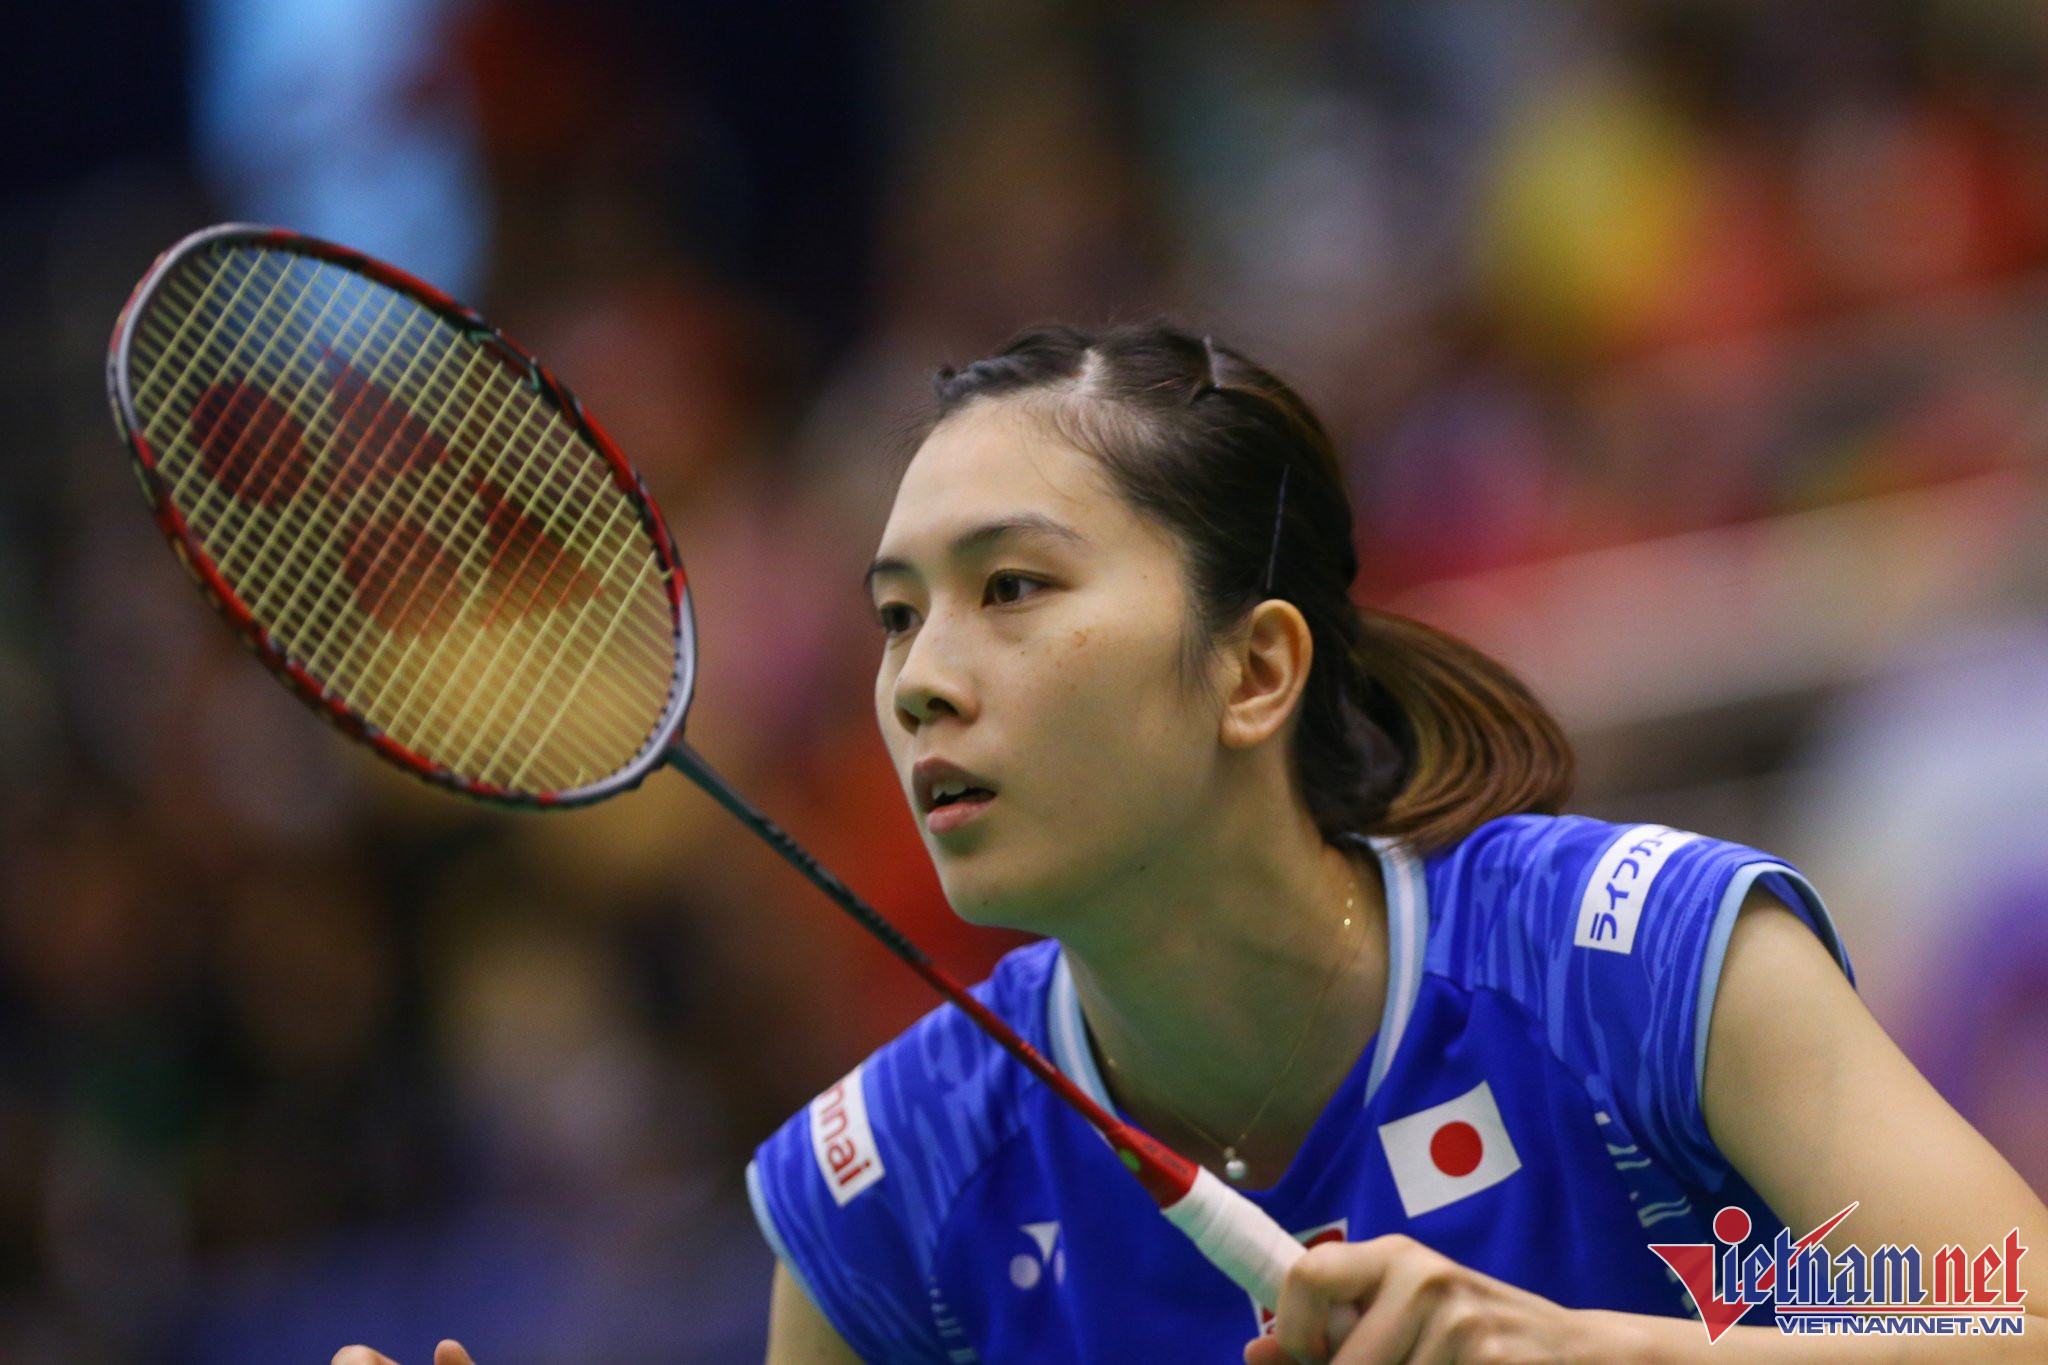 Ở nội dung đơn nữ, tay vợt Aya Ohori người Nhật Bản được xếp hạt giống số 1. Tay vợt đứng thứ 27 thế giới còn được mệnh danh là "người đẹp cầu lông" và hơn Thùy Linh 26 bậc. Ohori từng thua ngược trước Thuỳ Linh tại giải vô địch thế giới với tỷ số 1-2 (21-12, 19-21, 11-21) 